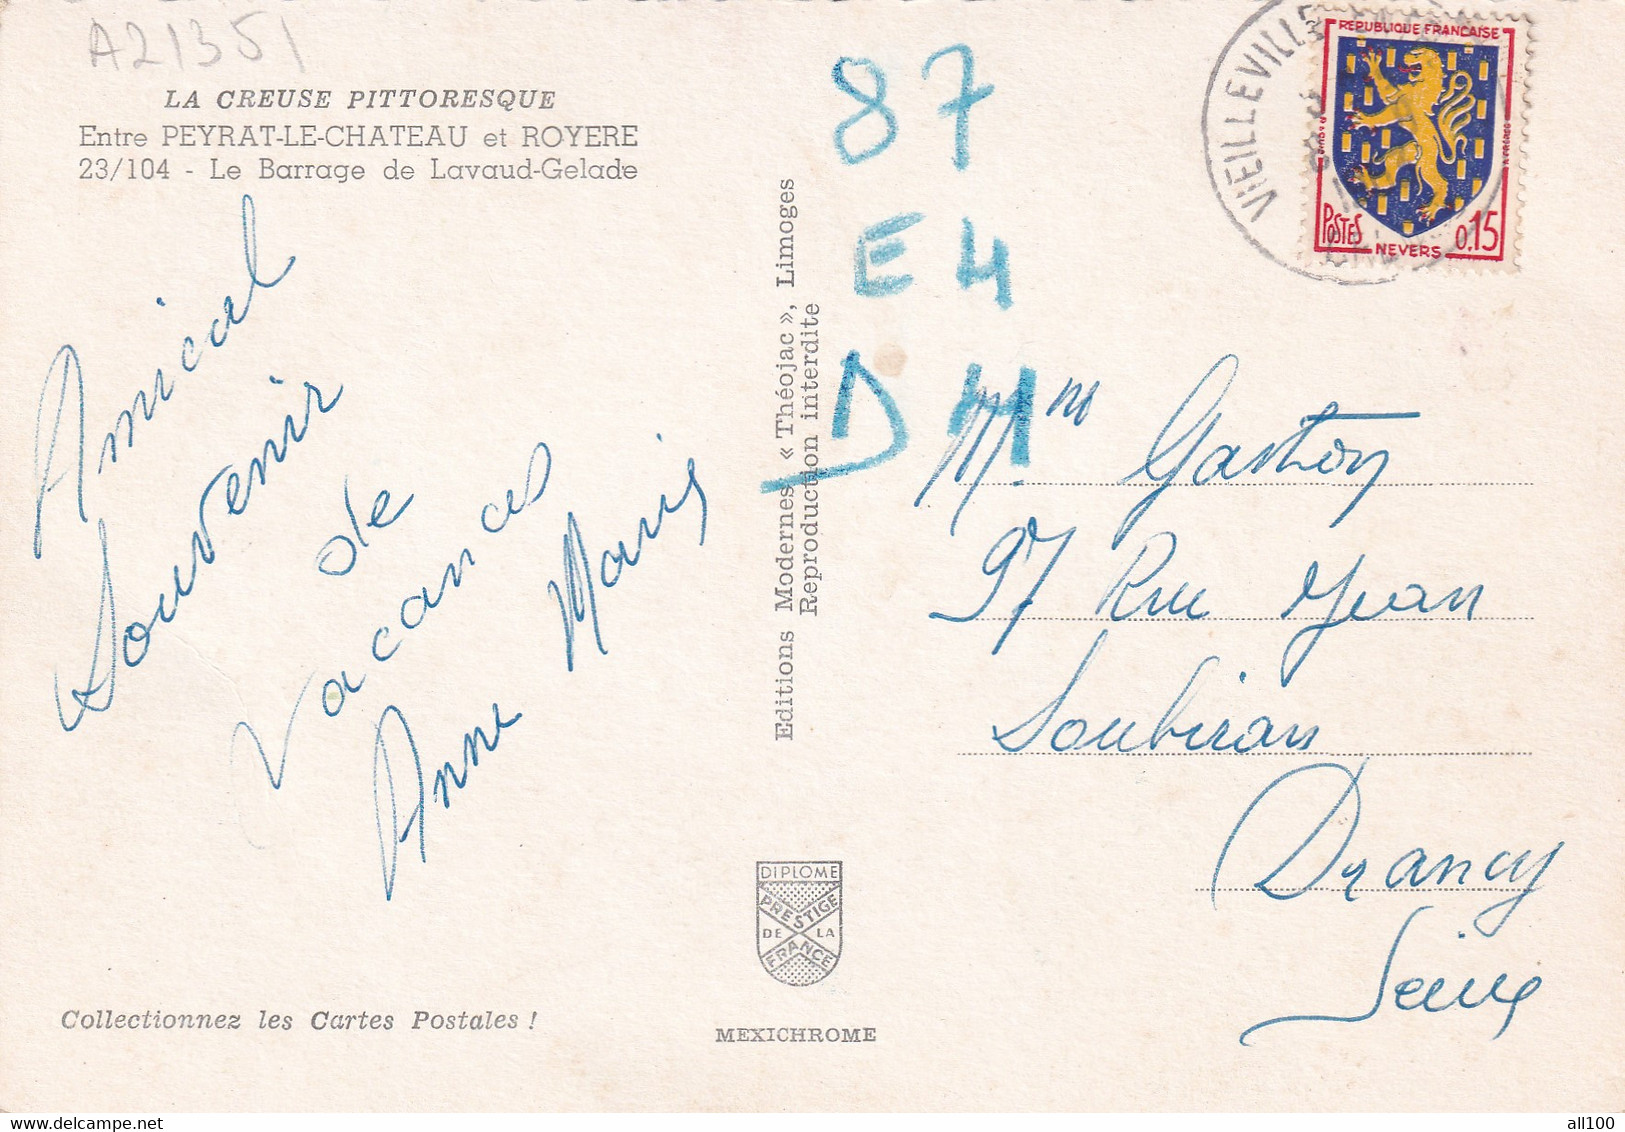 A21351 - ROYERE Entre Peyrat Le Chateau Le Barrage De Lavaud Gelade Creuse France Post Card Used Stamp Republique F - Royere